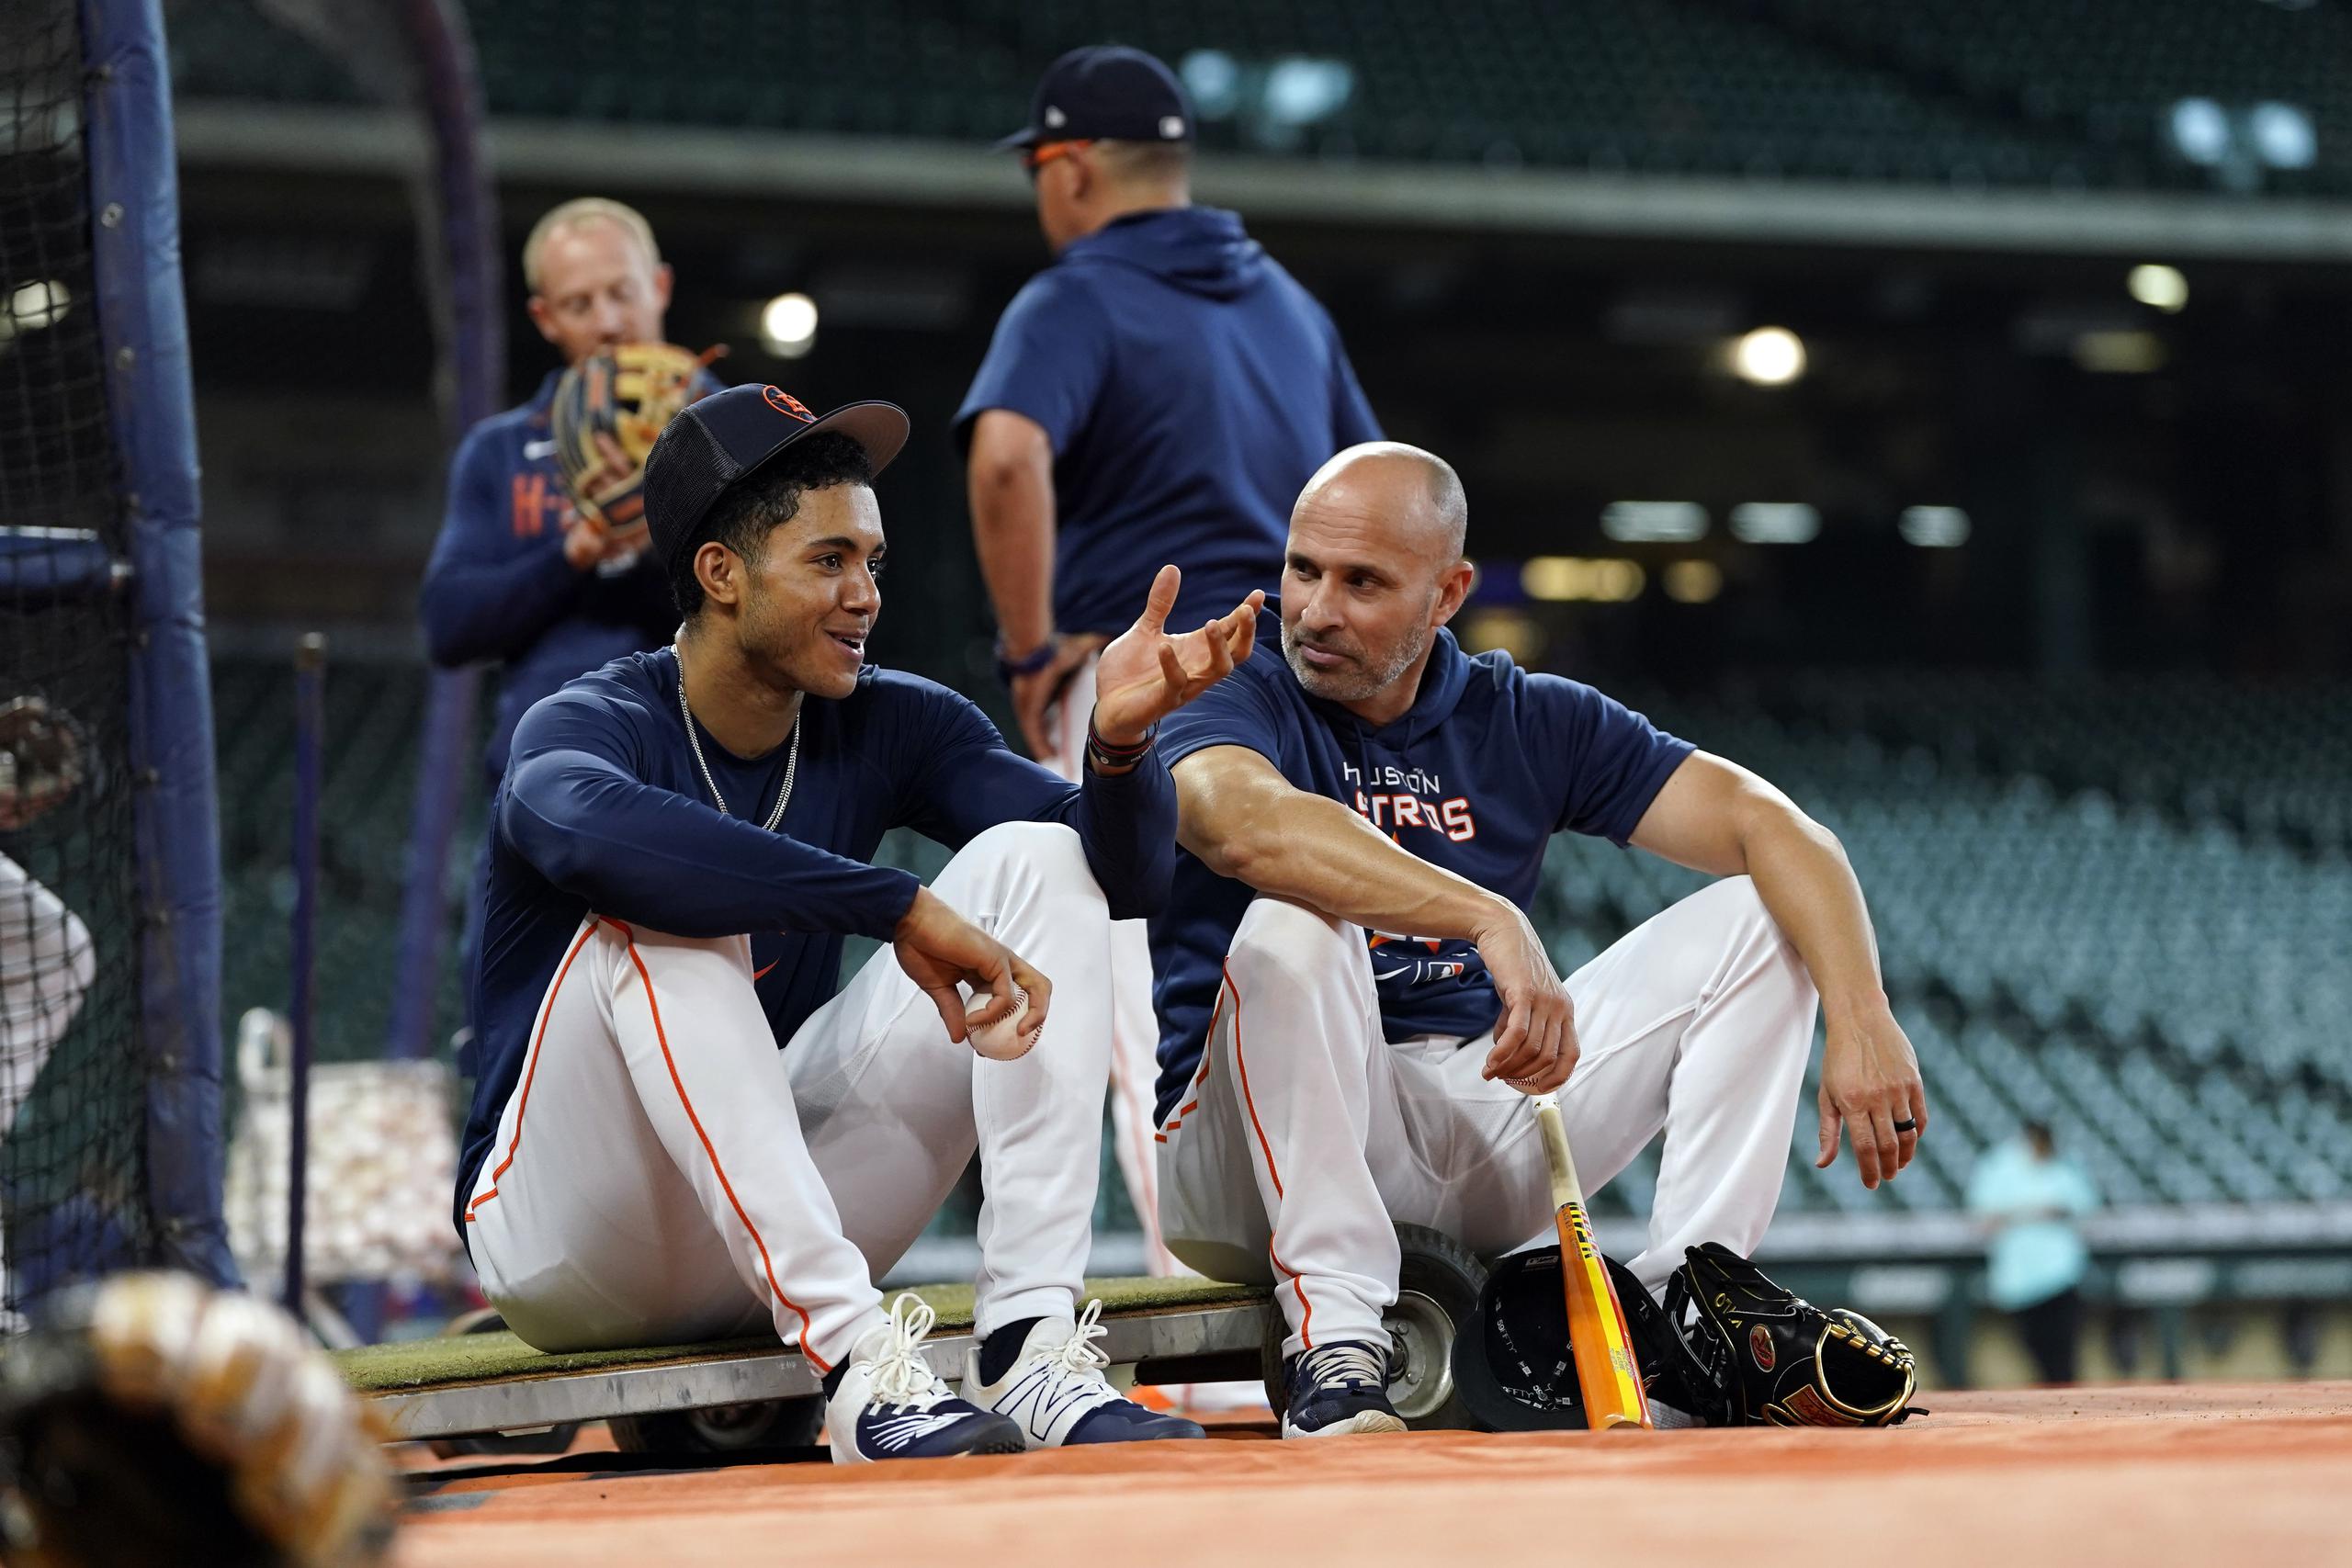 Jeremy Pena, ã la izquierda, conversa con el coach de la banca de los Astros y adiestrador de infielders, el boricua Josué Espada, antes de un partido.